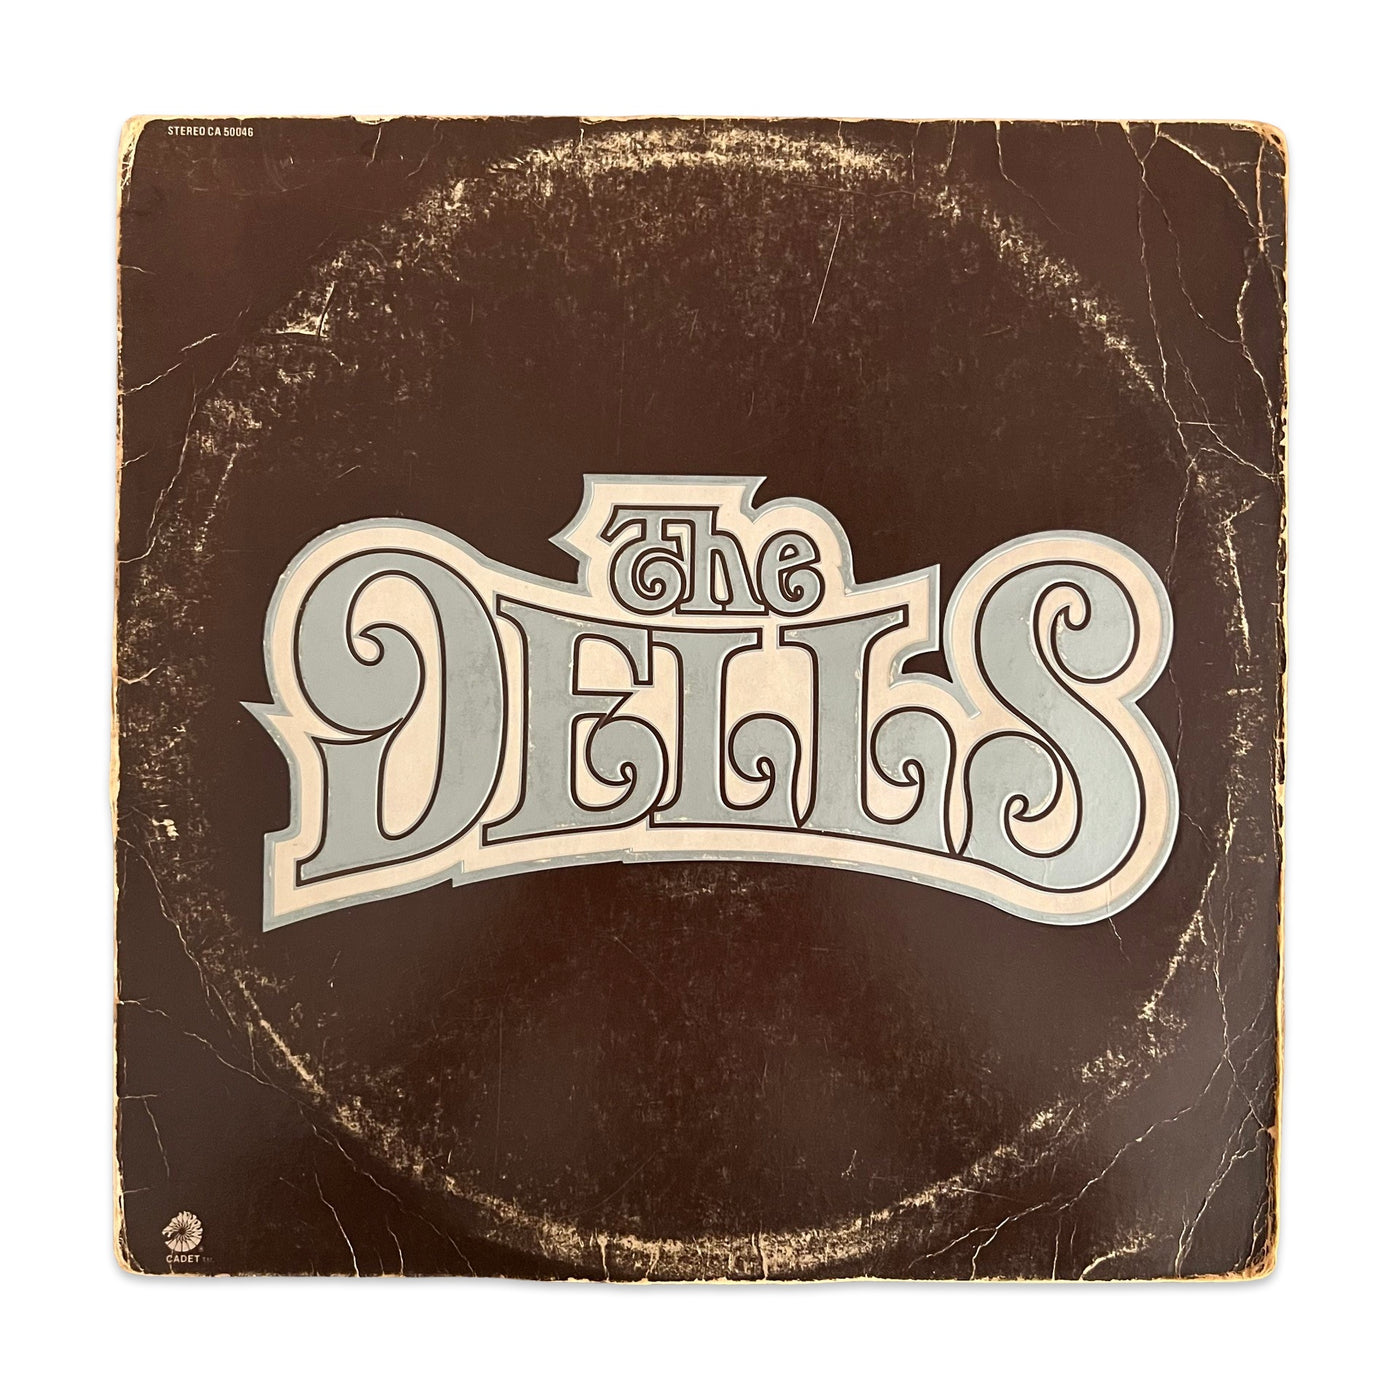 The Dells – The Dells